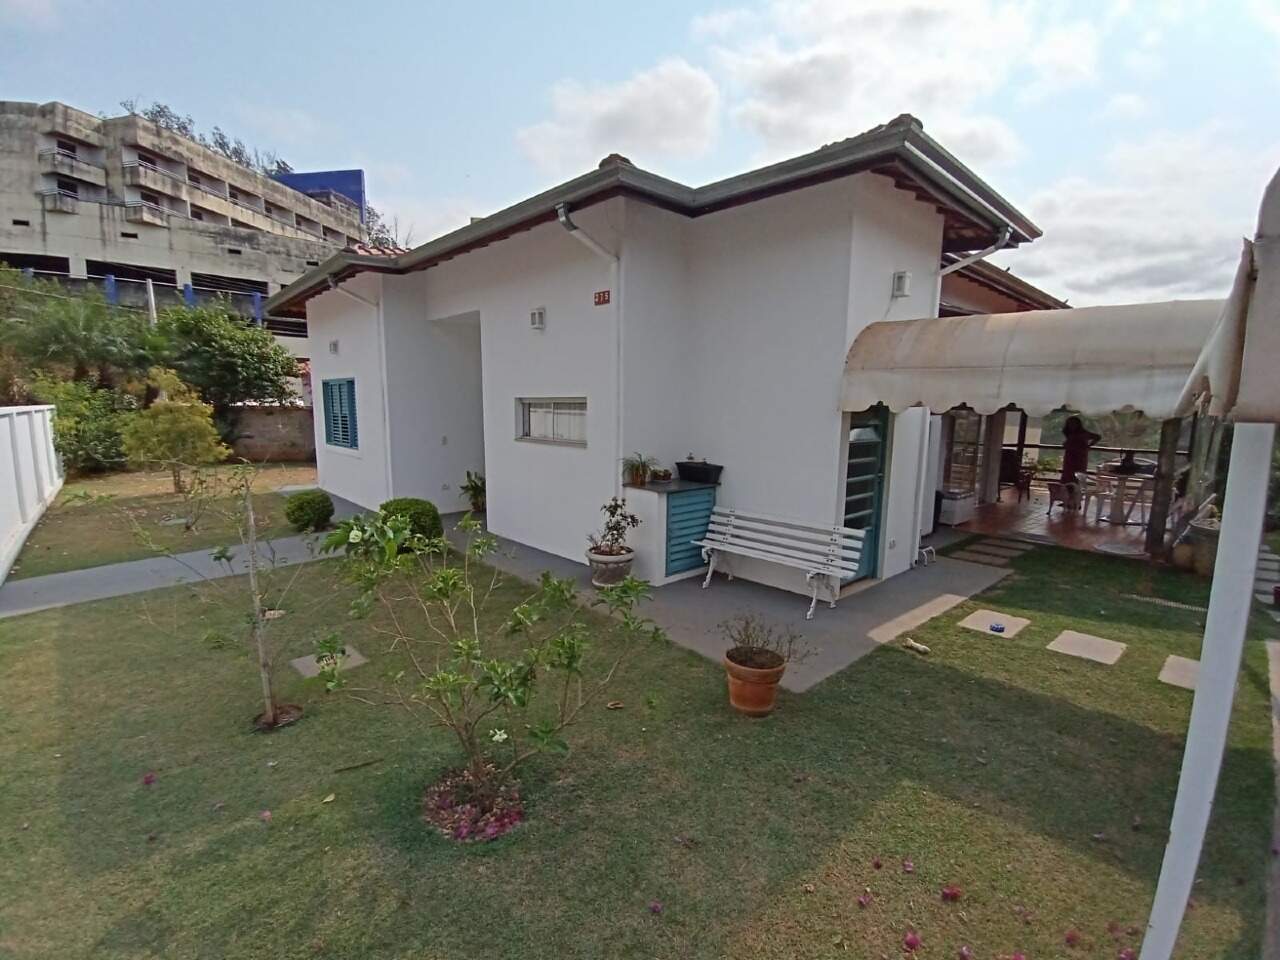 Chácara à venda, 2 quartos, sendo 1 suíte, no bairro Centro em Águas de São Pedro - SP